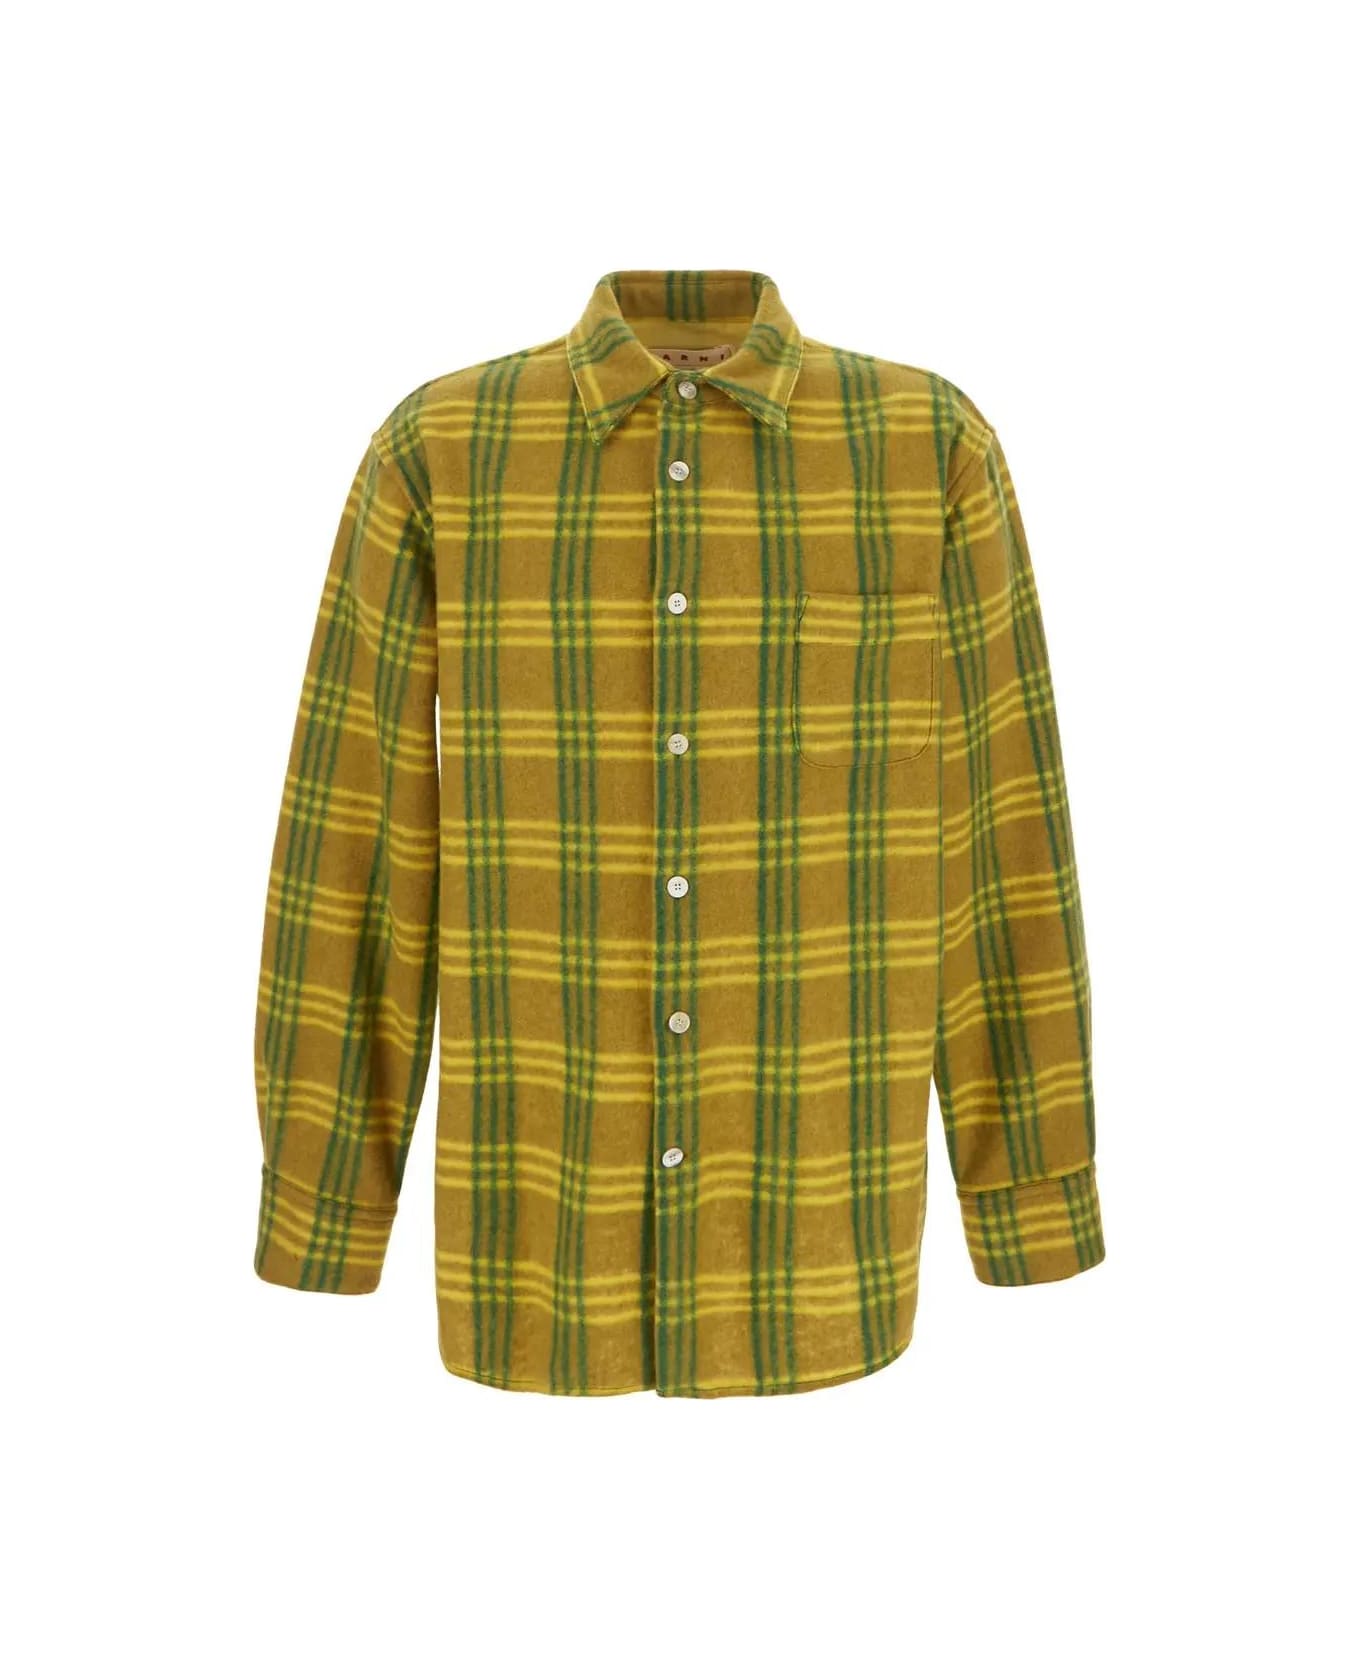 Marni Check Pile Shirt - Green